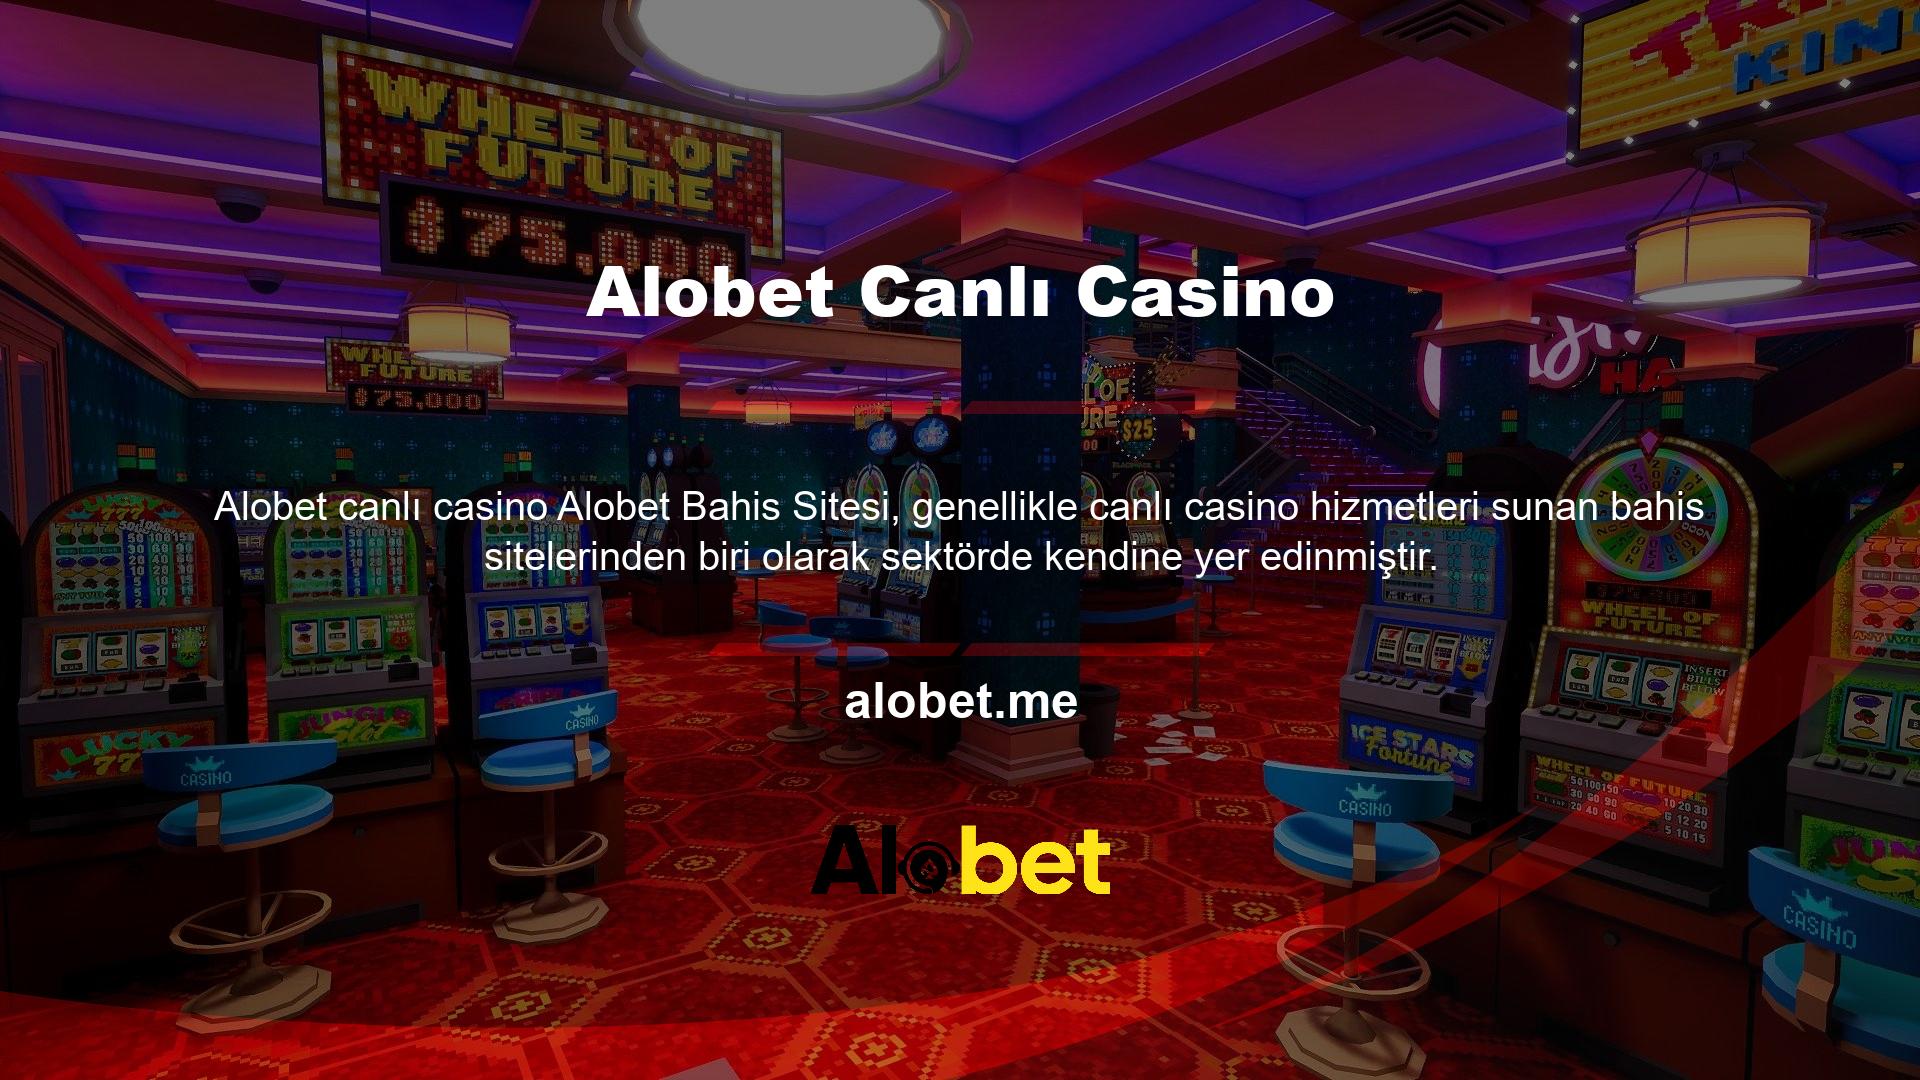 Site Alobet canlı casino canlı bahisleri o kadar çeşitlendirmiştir ki diğerlerinden daha fazla ilgi görmektedir